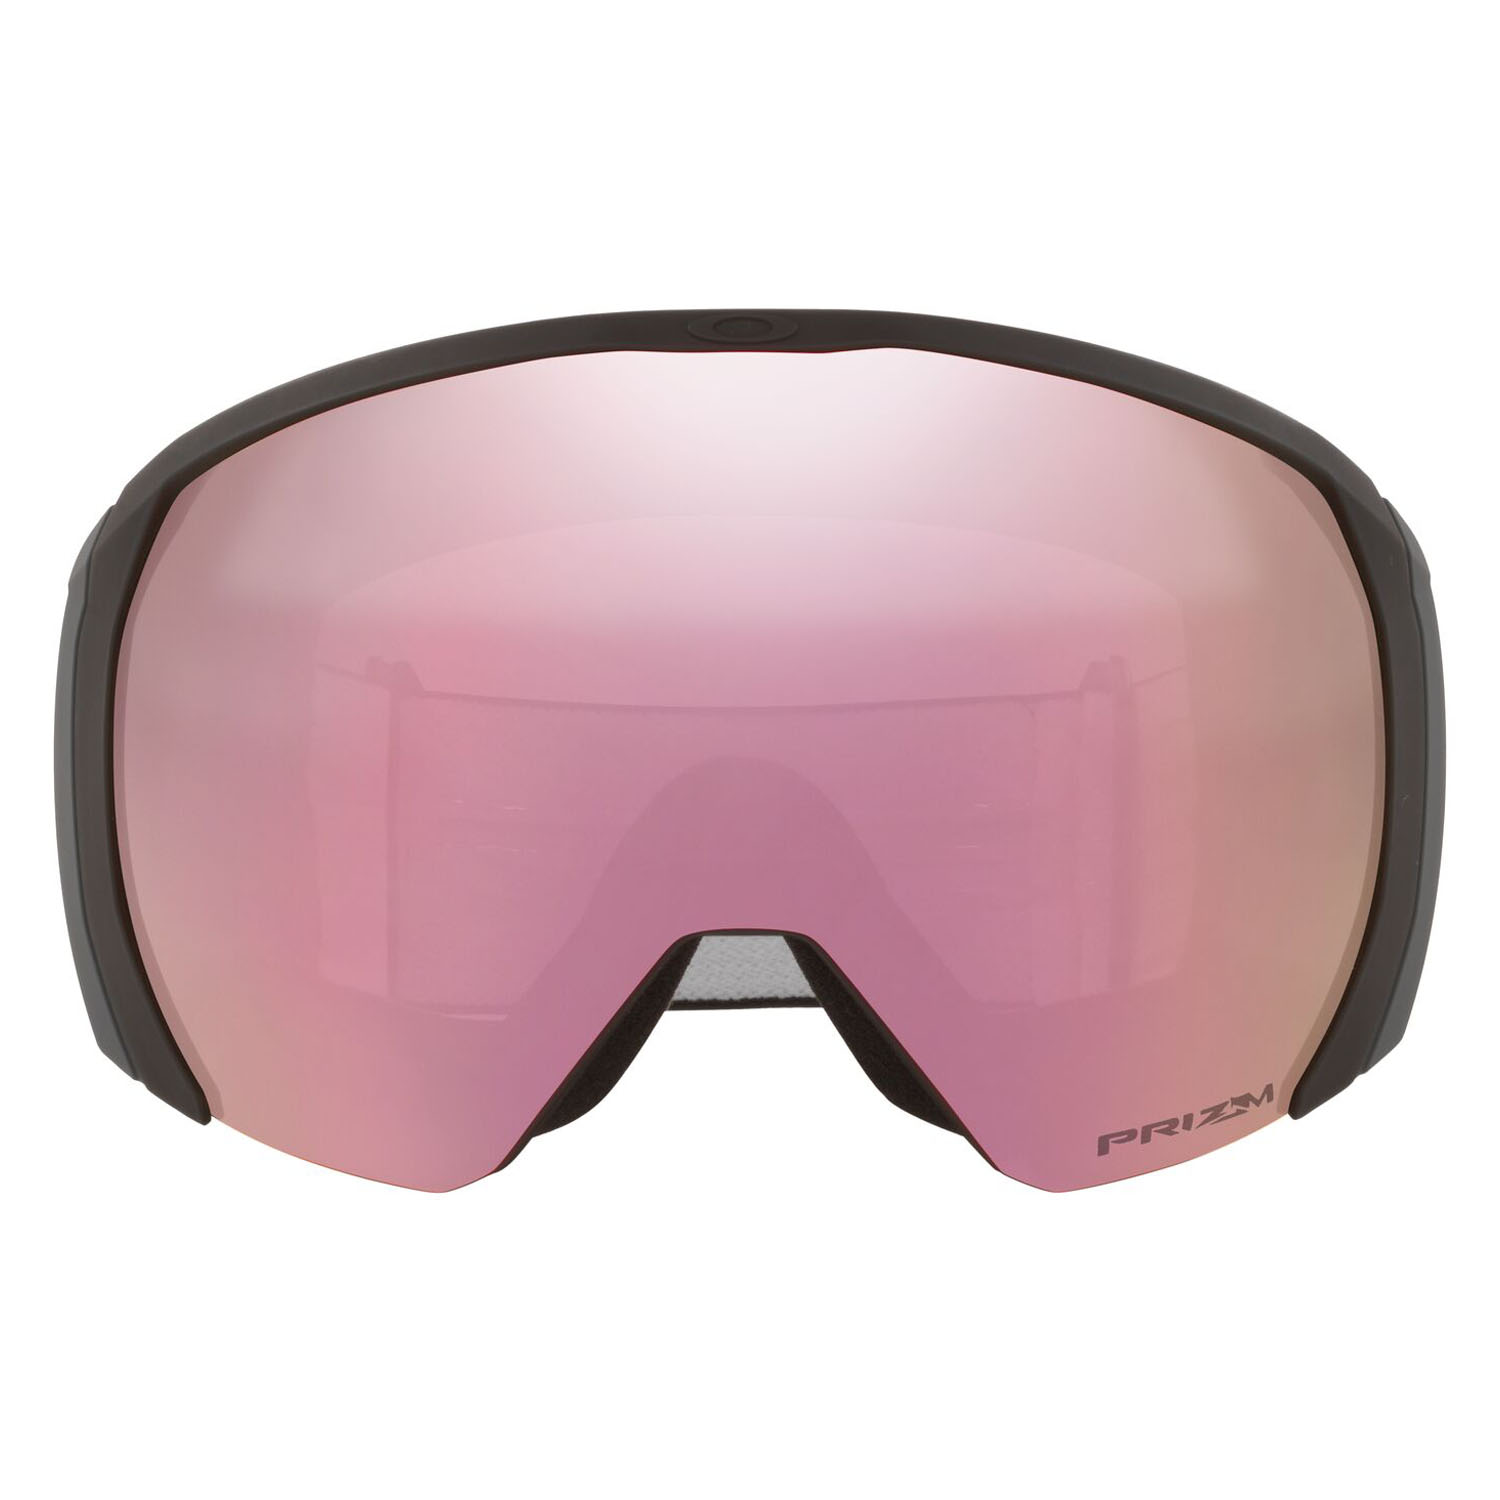 Очки горнолыжные Oakley Flight Path L Matte Black/Prizm Snow Hi Pink